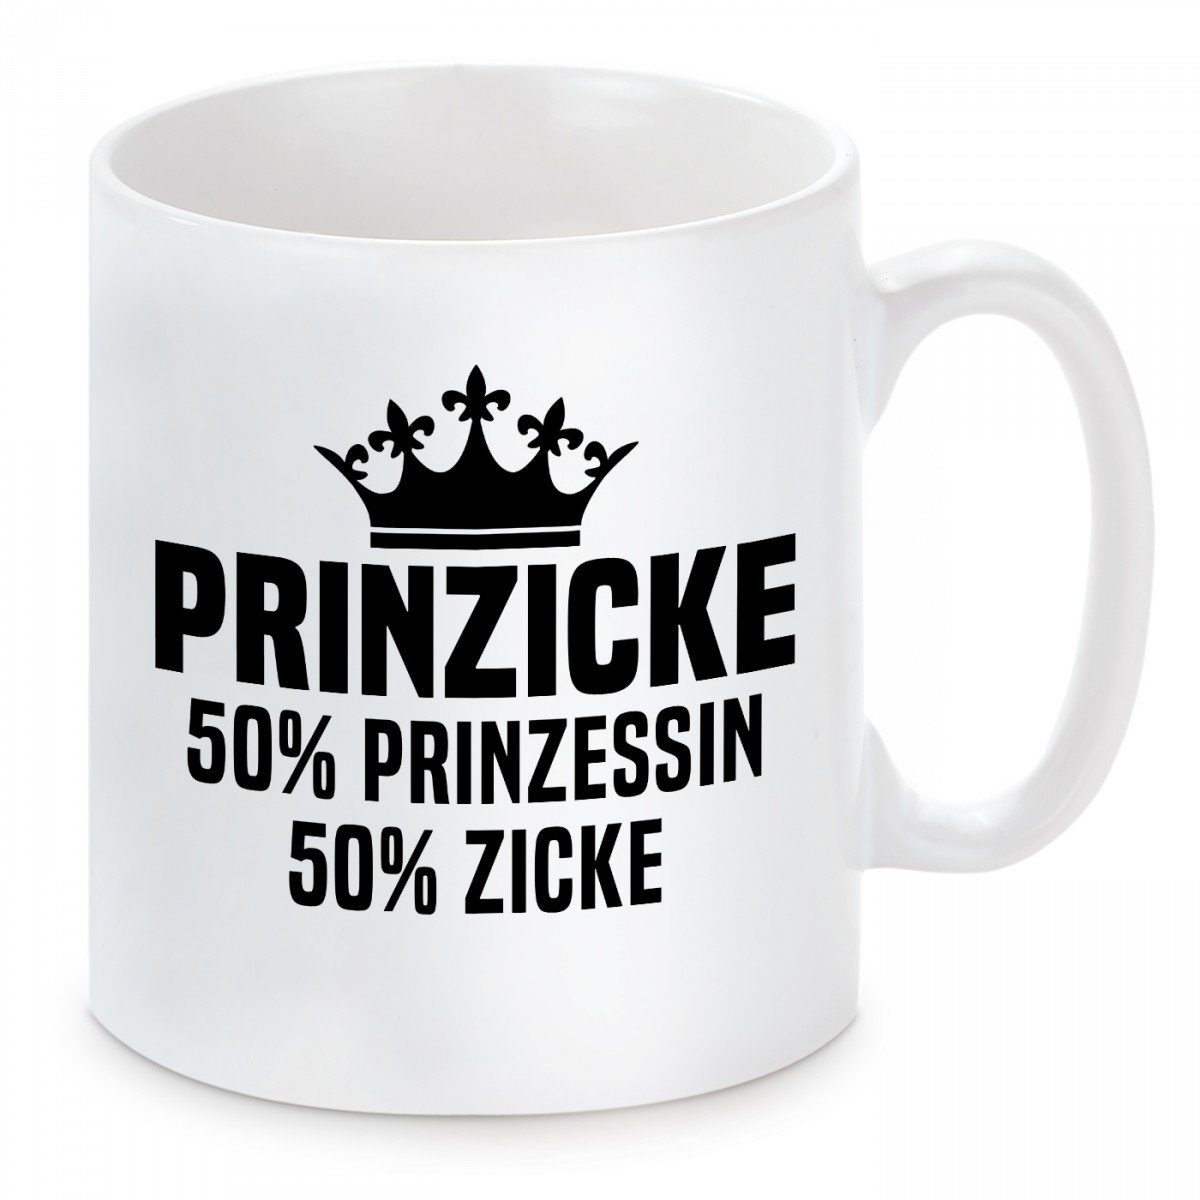 50% 50% Keramik, PRINZICKE Kaffeetasse mit Motiv Herzbotschaft spülmaschinenfest Zicke, Tasse Prinzessin Kaffeebecher mikrowellengeeignet und